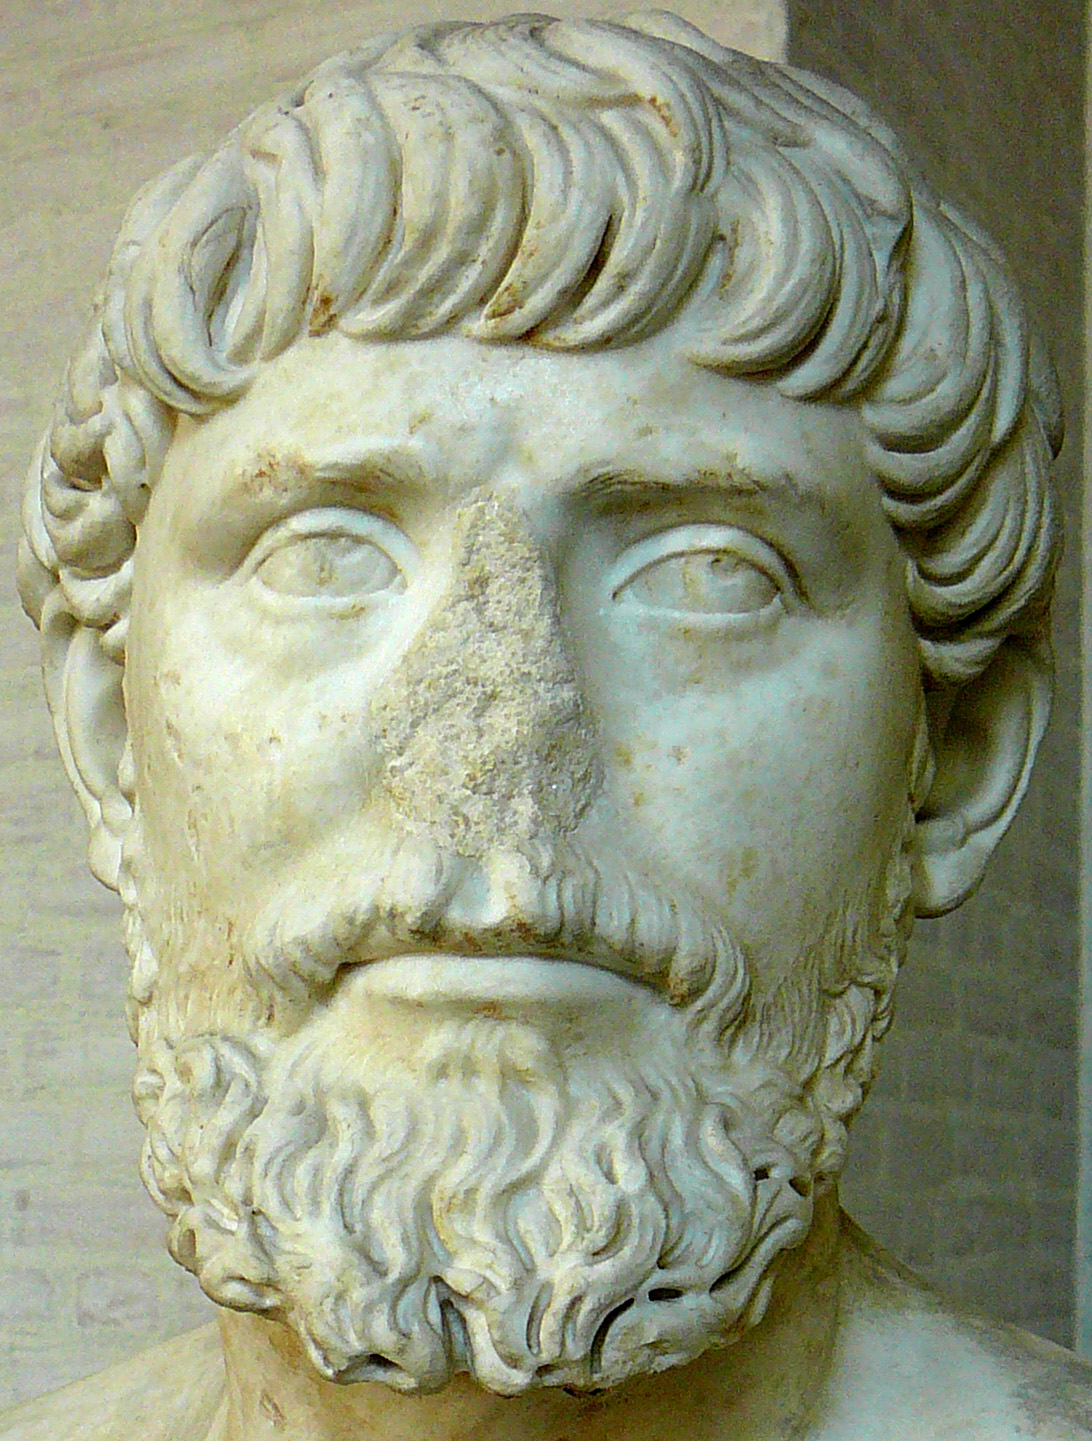 Busto di Apollodoro di Damasco, oggi esposto presso la gliptoteca (Monaco di Baviera) [Foto: G. P. Ma | Some rights reserved]